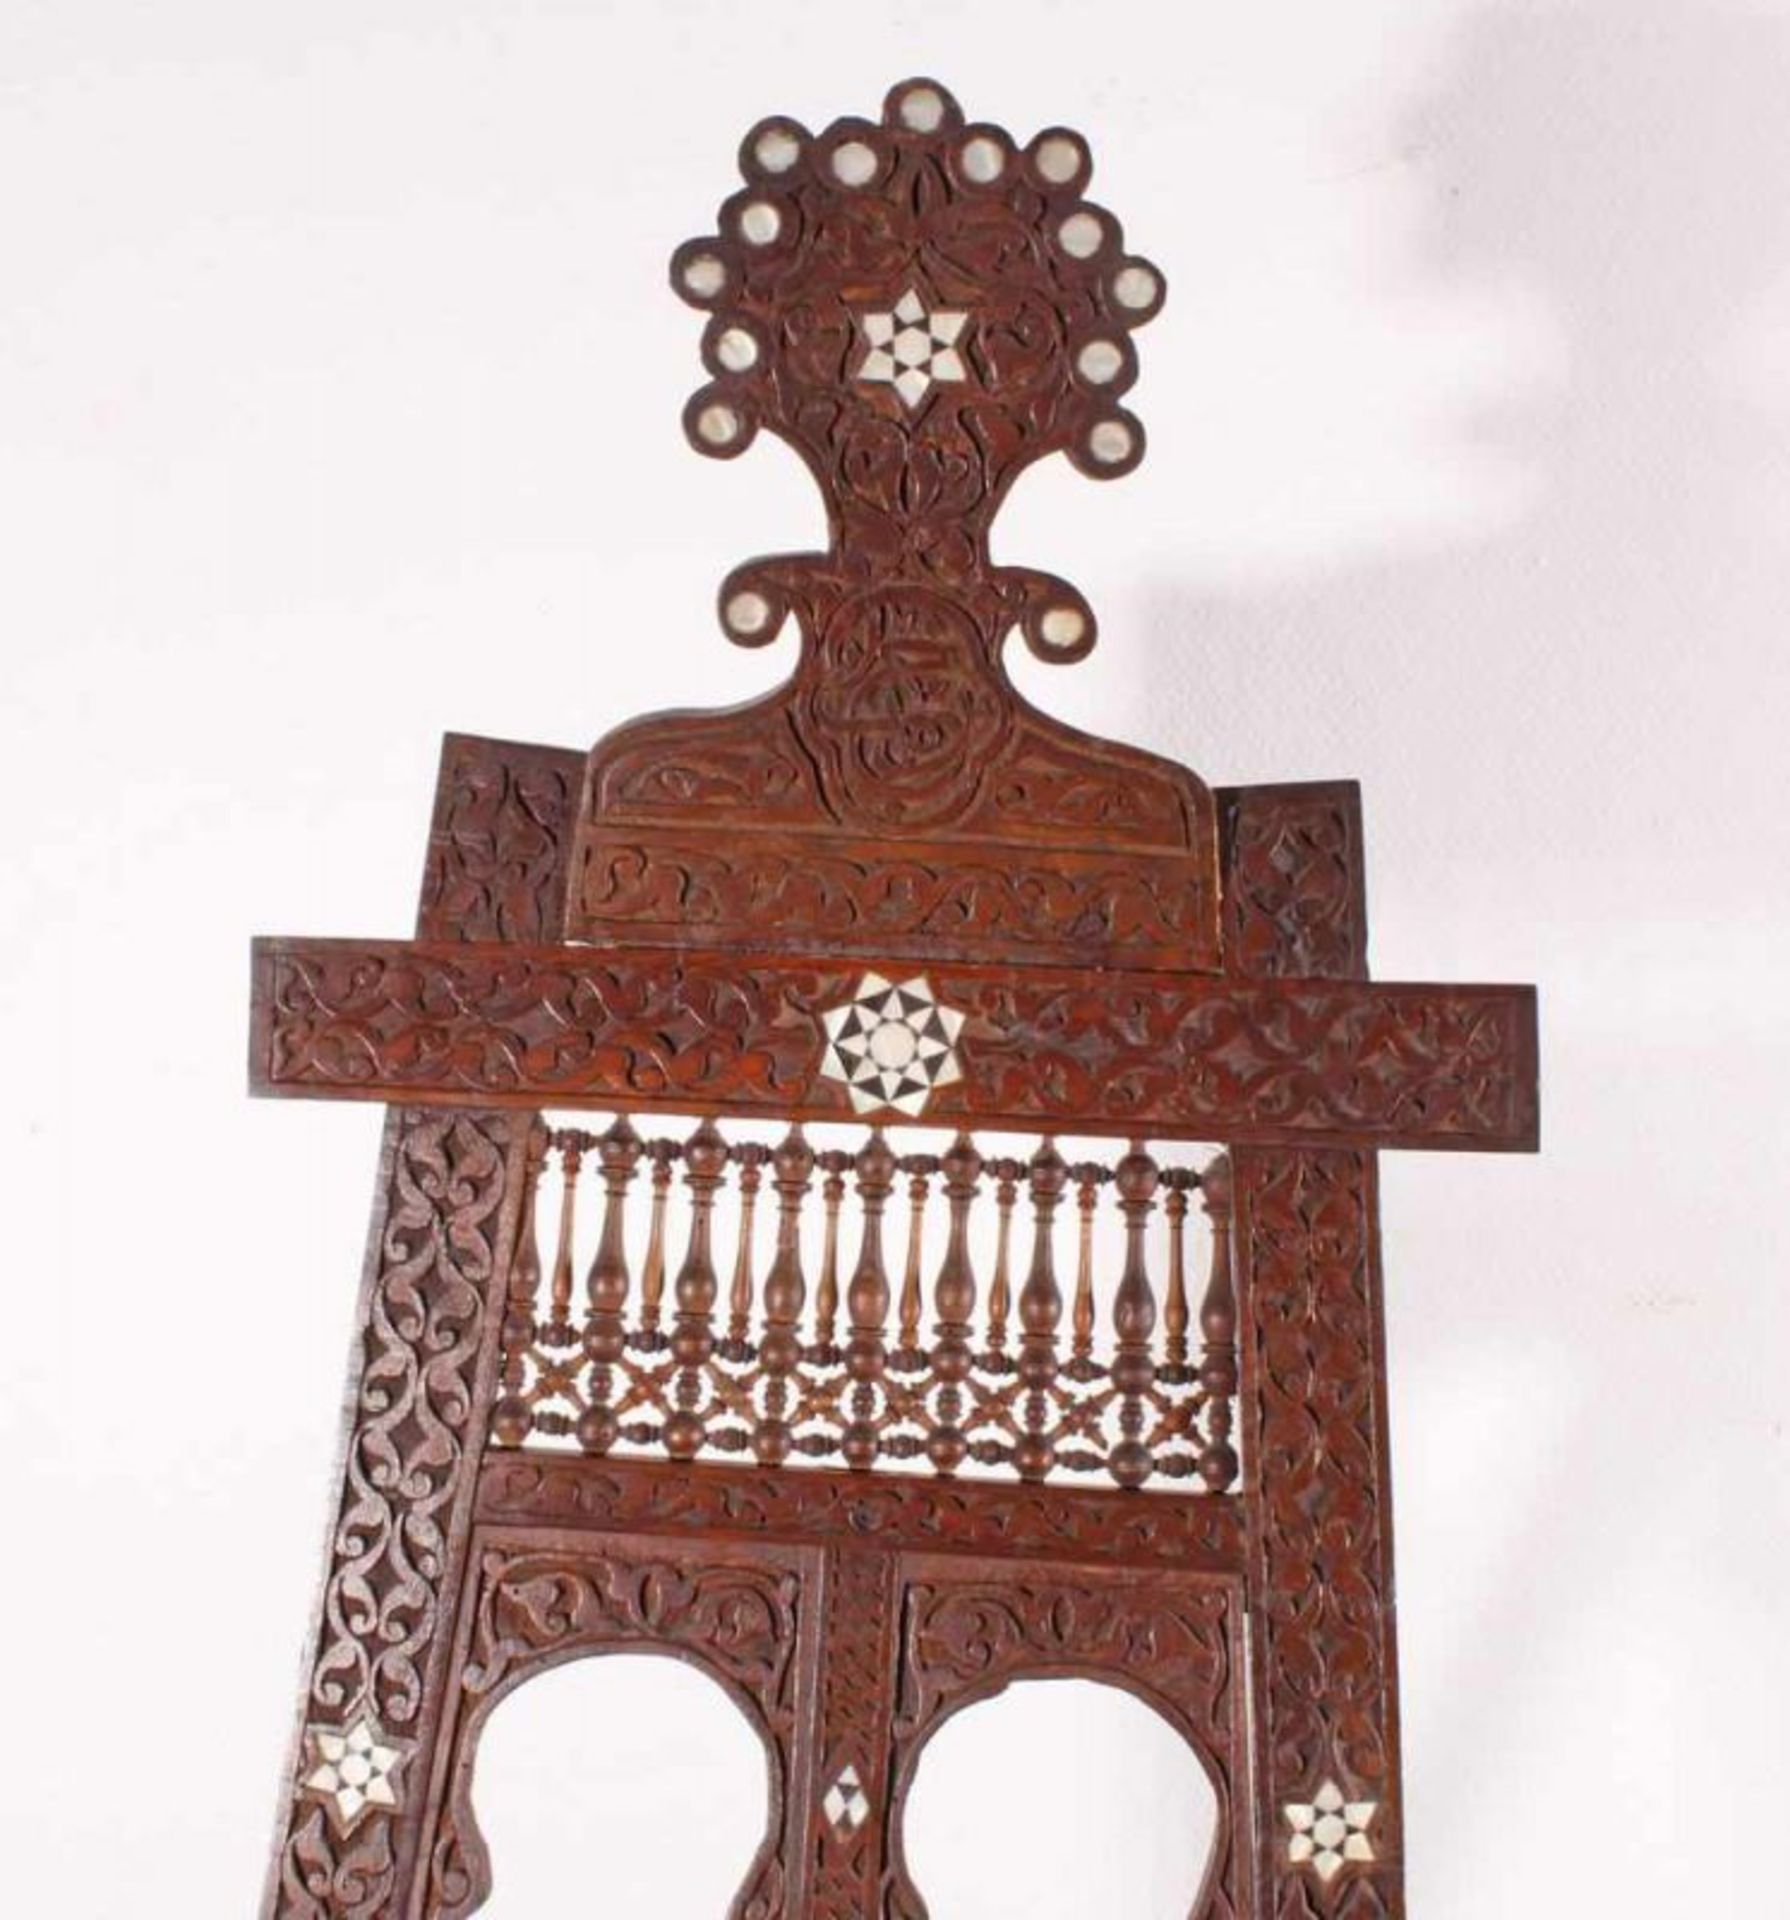 Staffelei, Holz, Perlmutteinlagen, orientalischer Stil, ca. 156 cm hoch 20.00 % buyer's premium on - Image 2 of 2